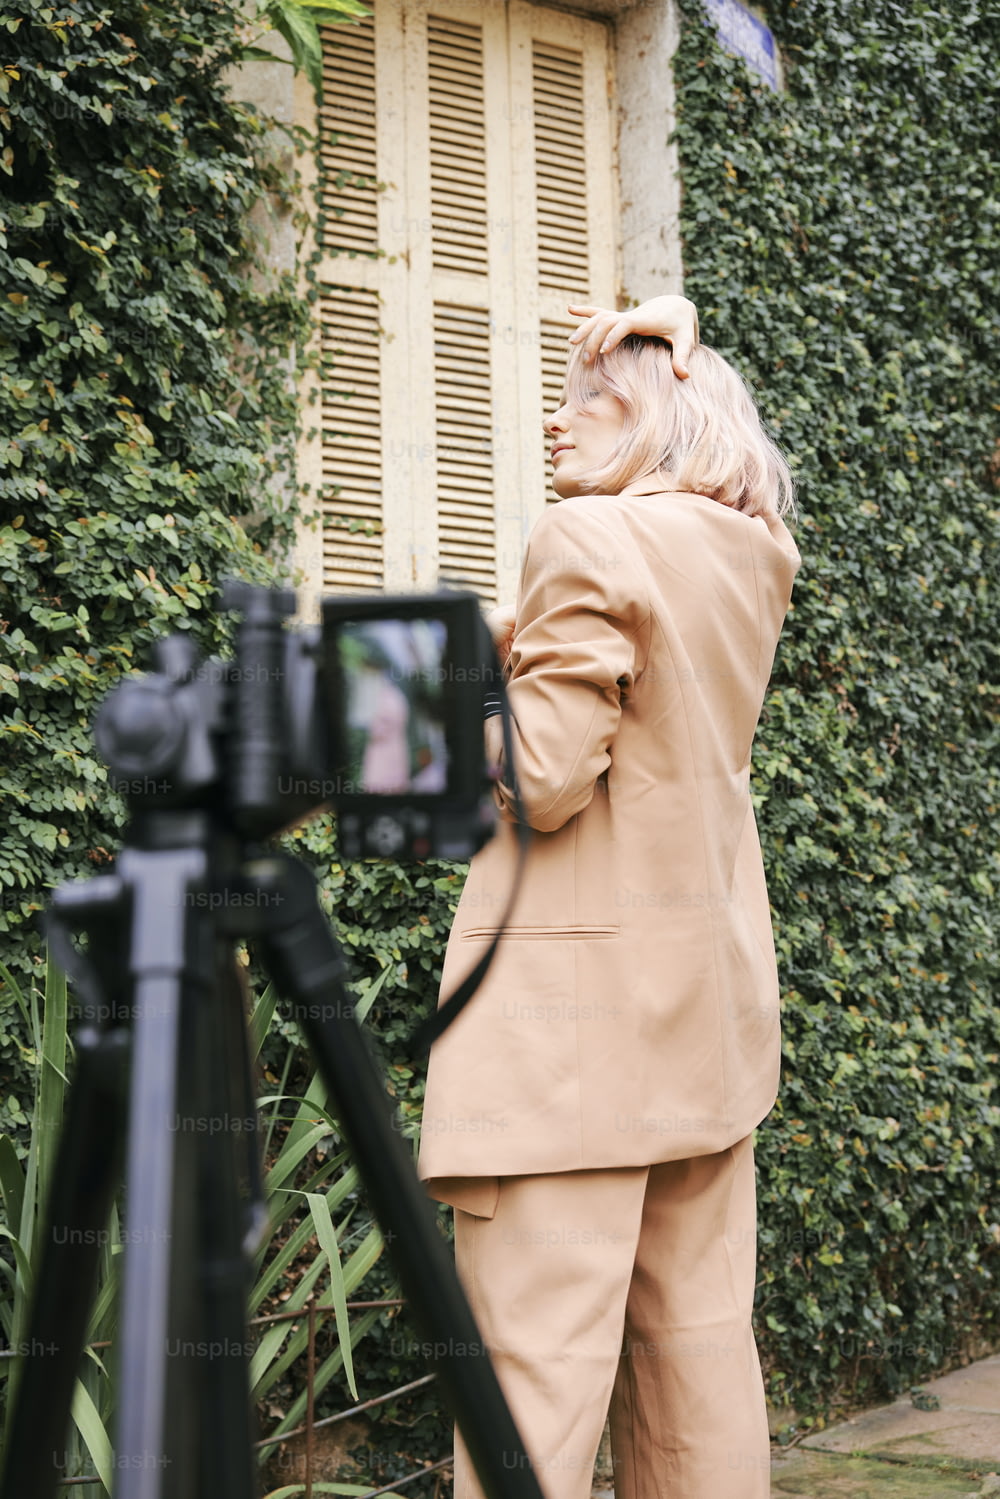 Una mujer parada frente a una cámara tomando una foto